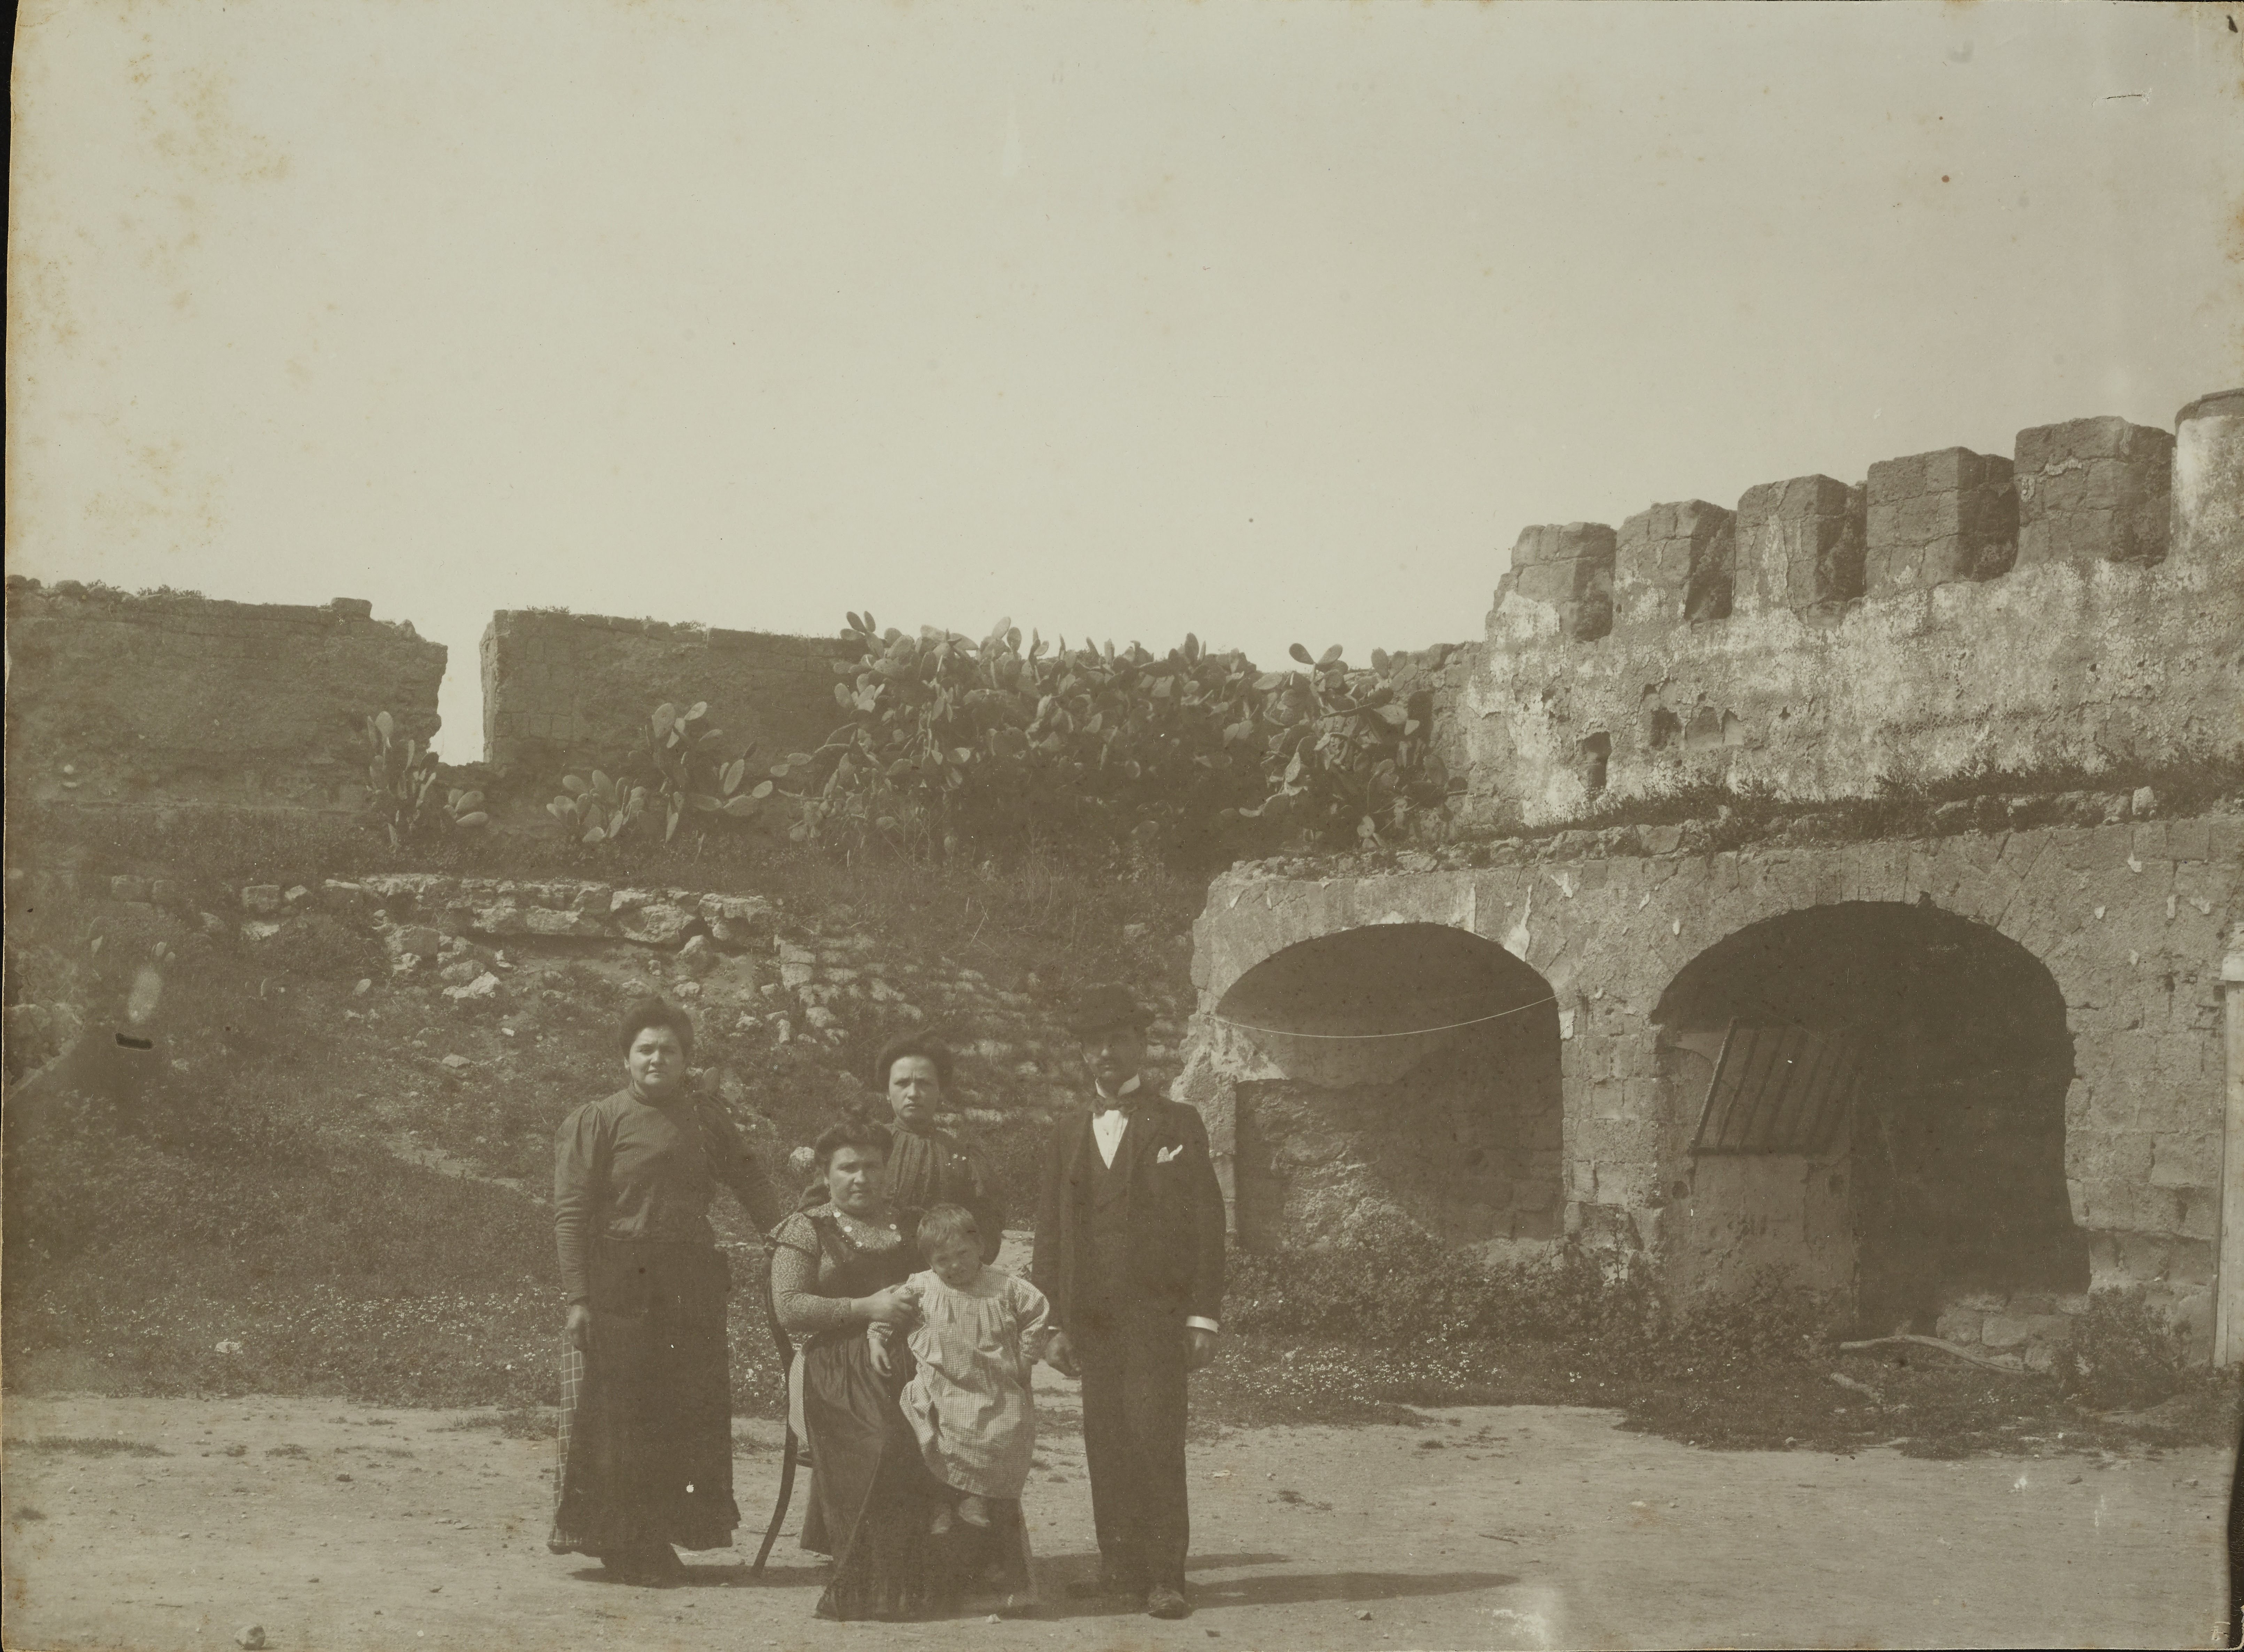 Fotografo non identificato, Napoli, S. Giovanni a Teduccio - Forte di Vigliena, veduta, 1901-1925, gelatina ai sali d'argento, MPI6071997